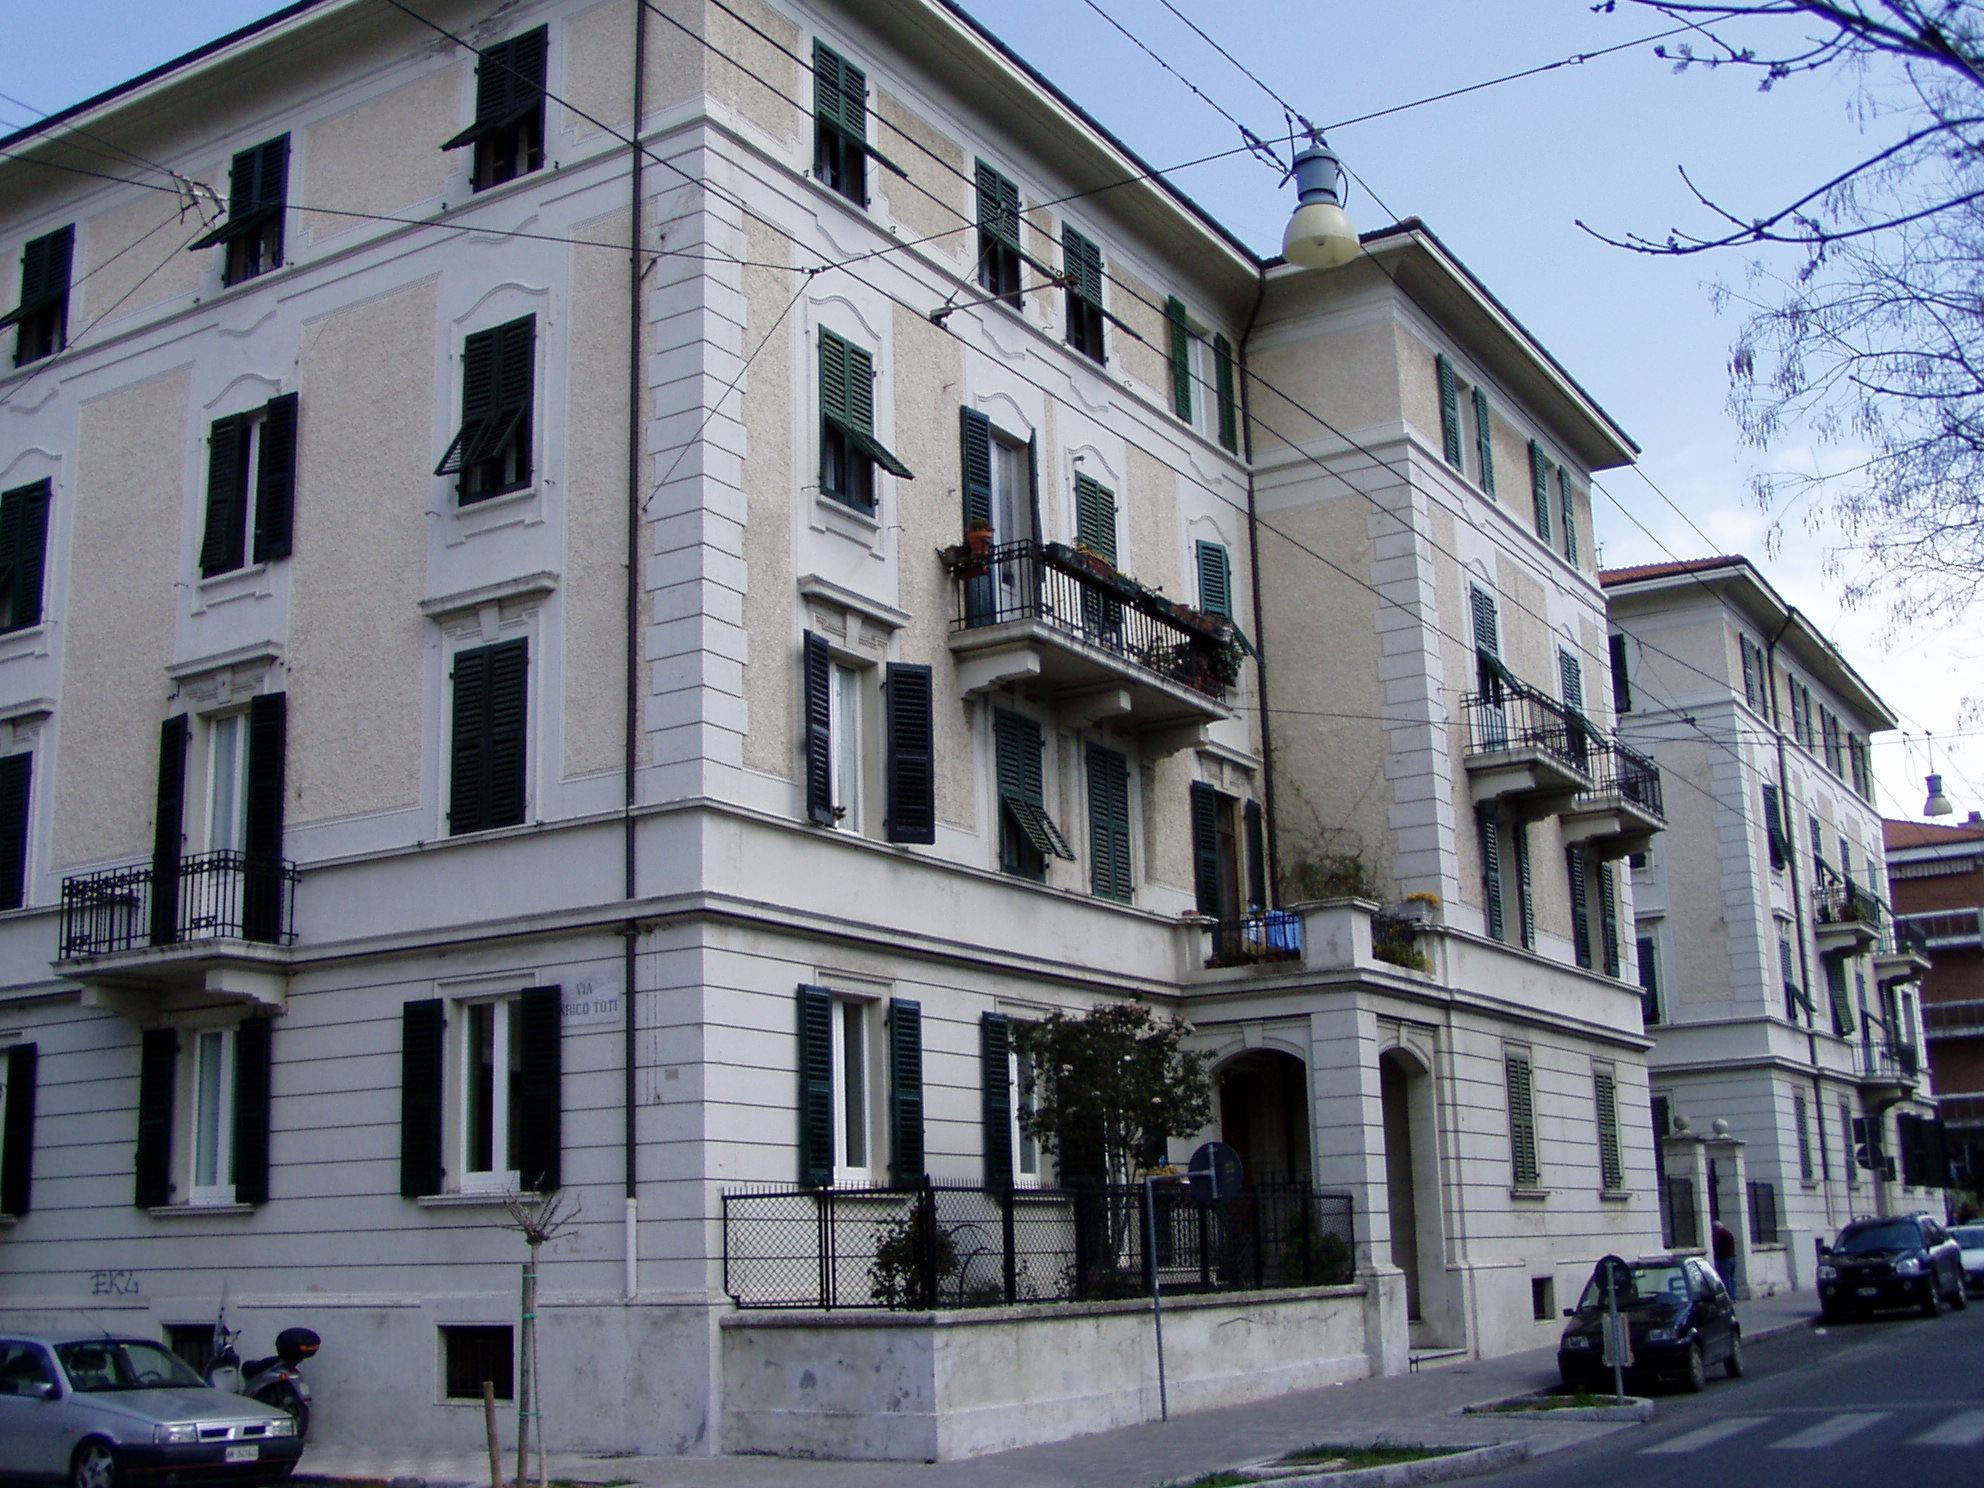 Palazzetto in stile neoclassico (palazzetto) - Ancona (AN) 